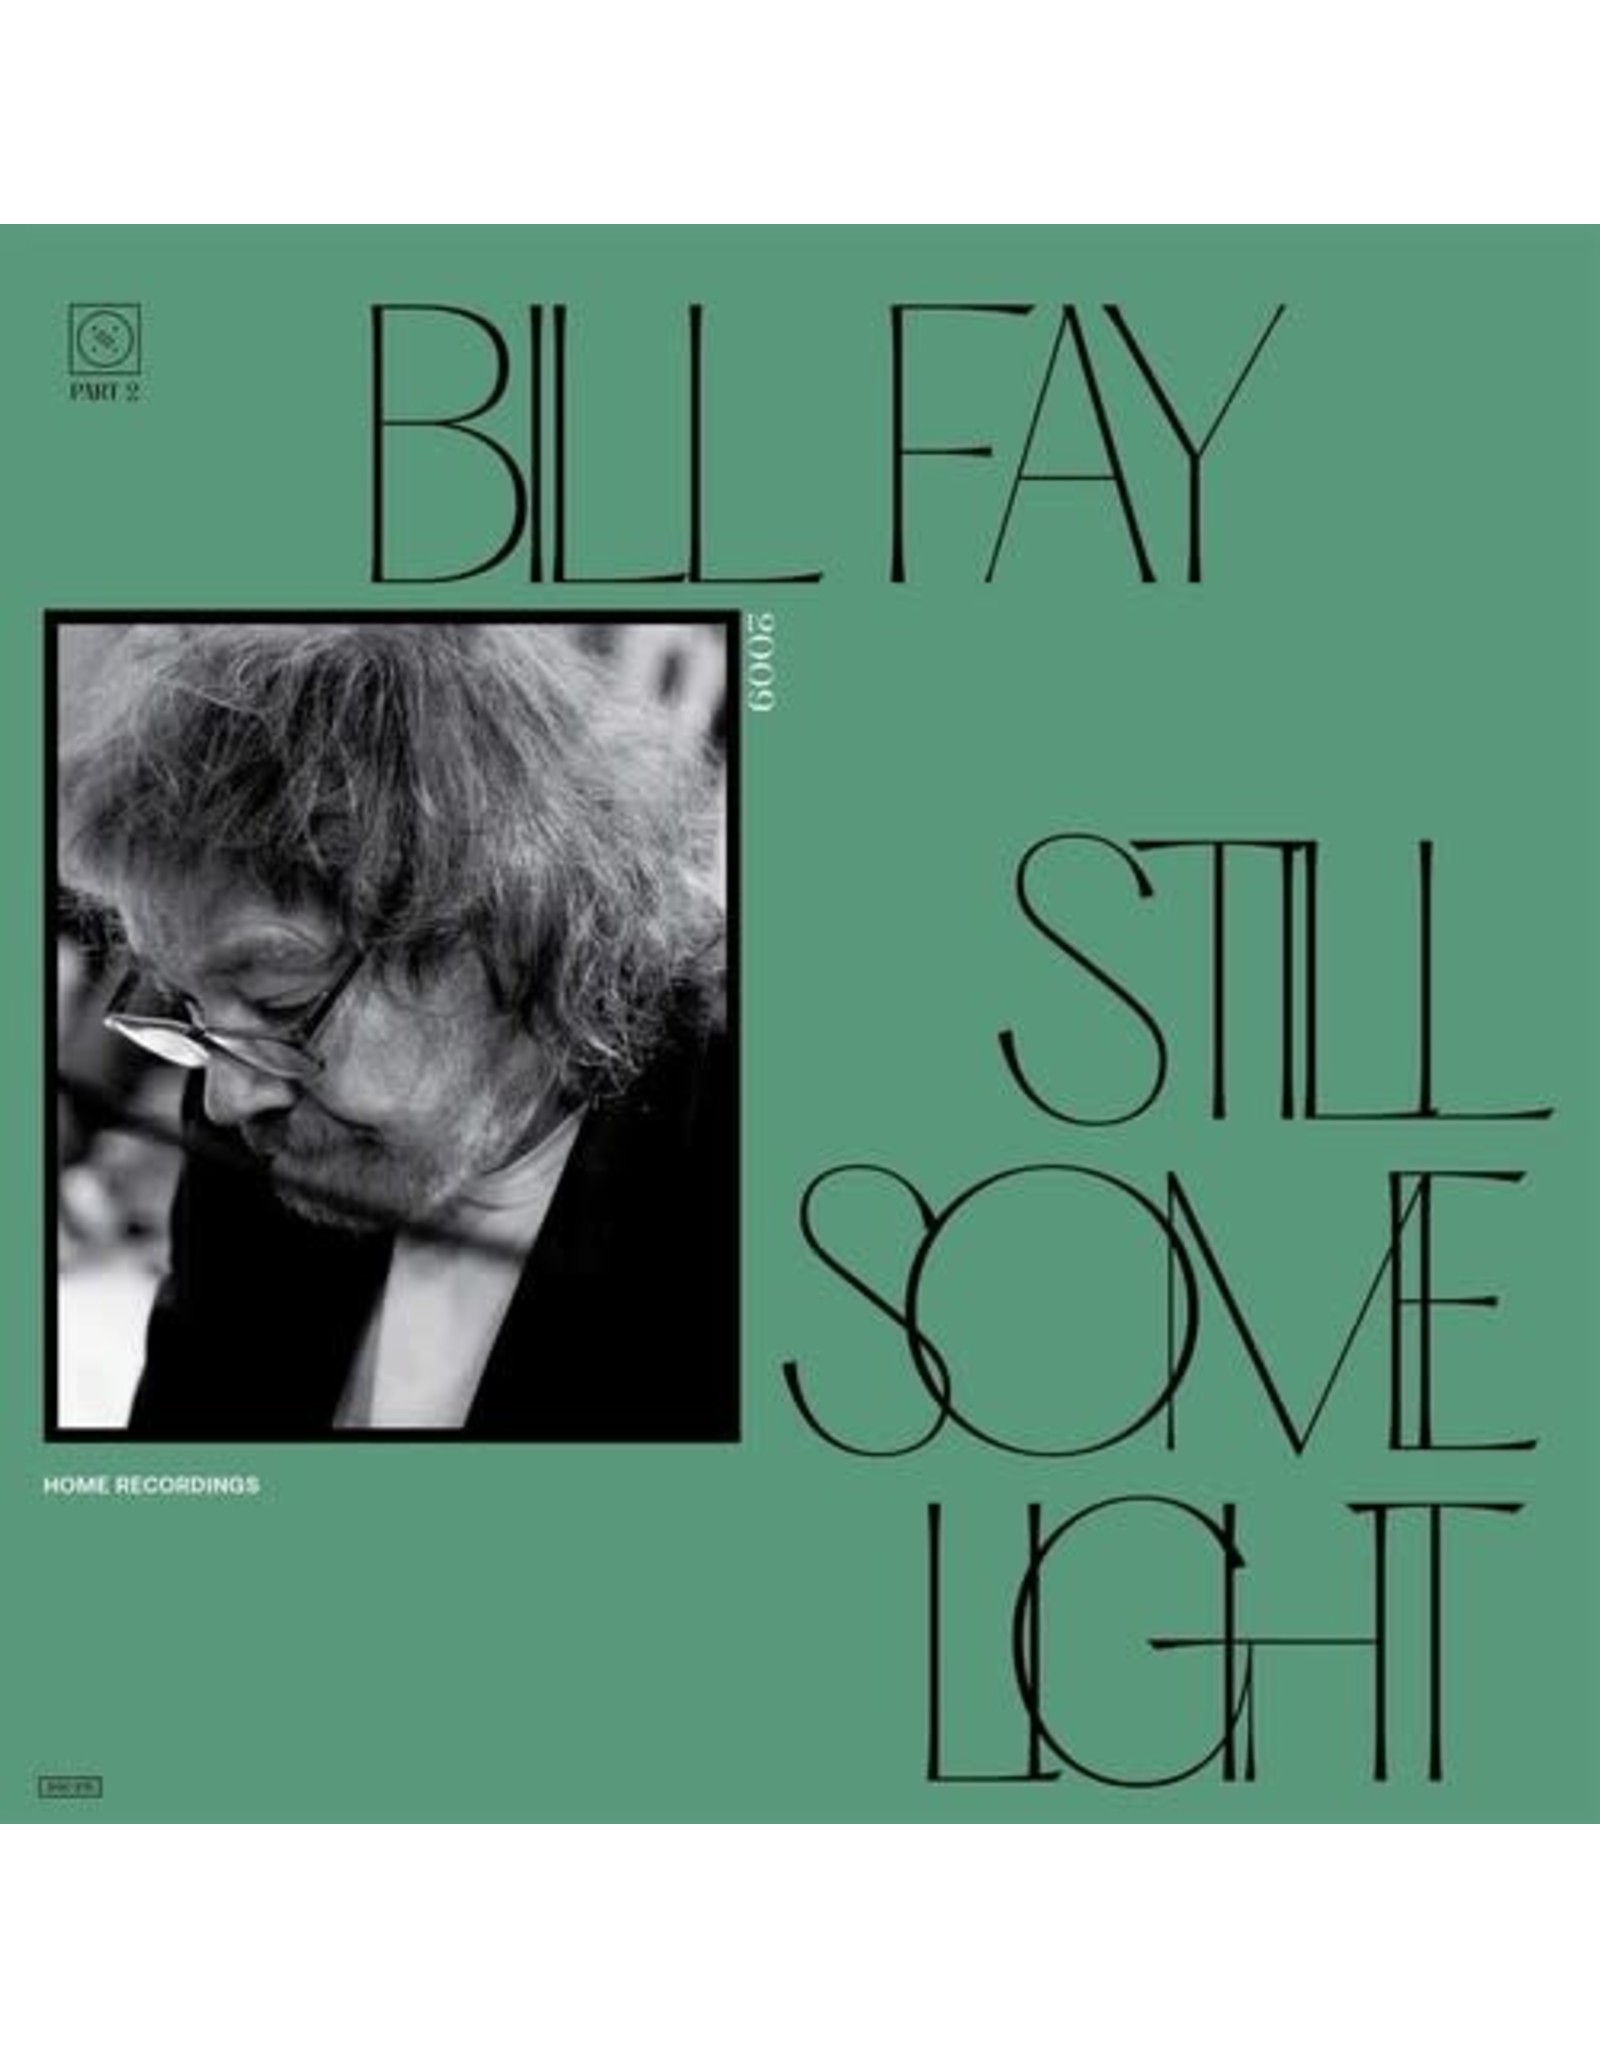 New Vinyl Bill Fay - Still Some Light: Part 2 2LP